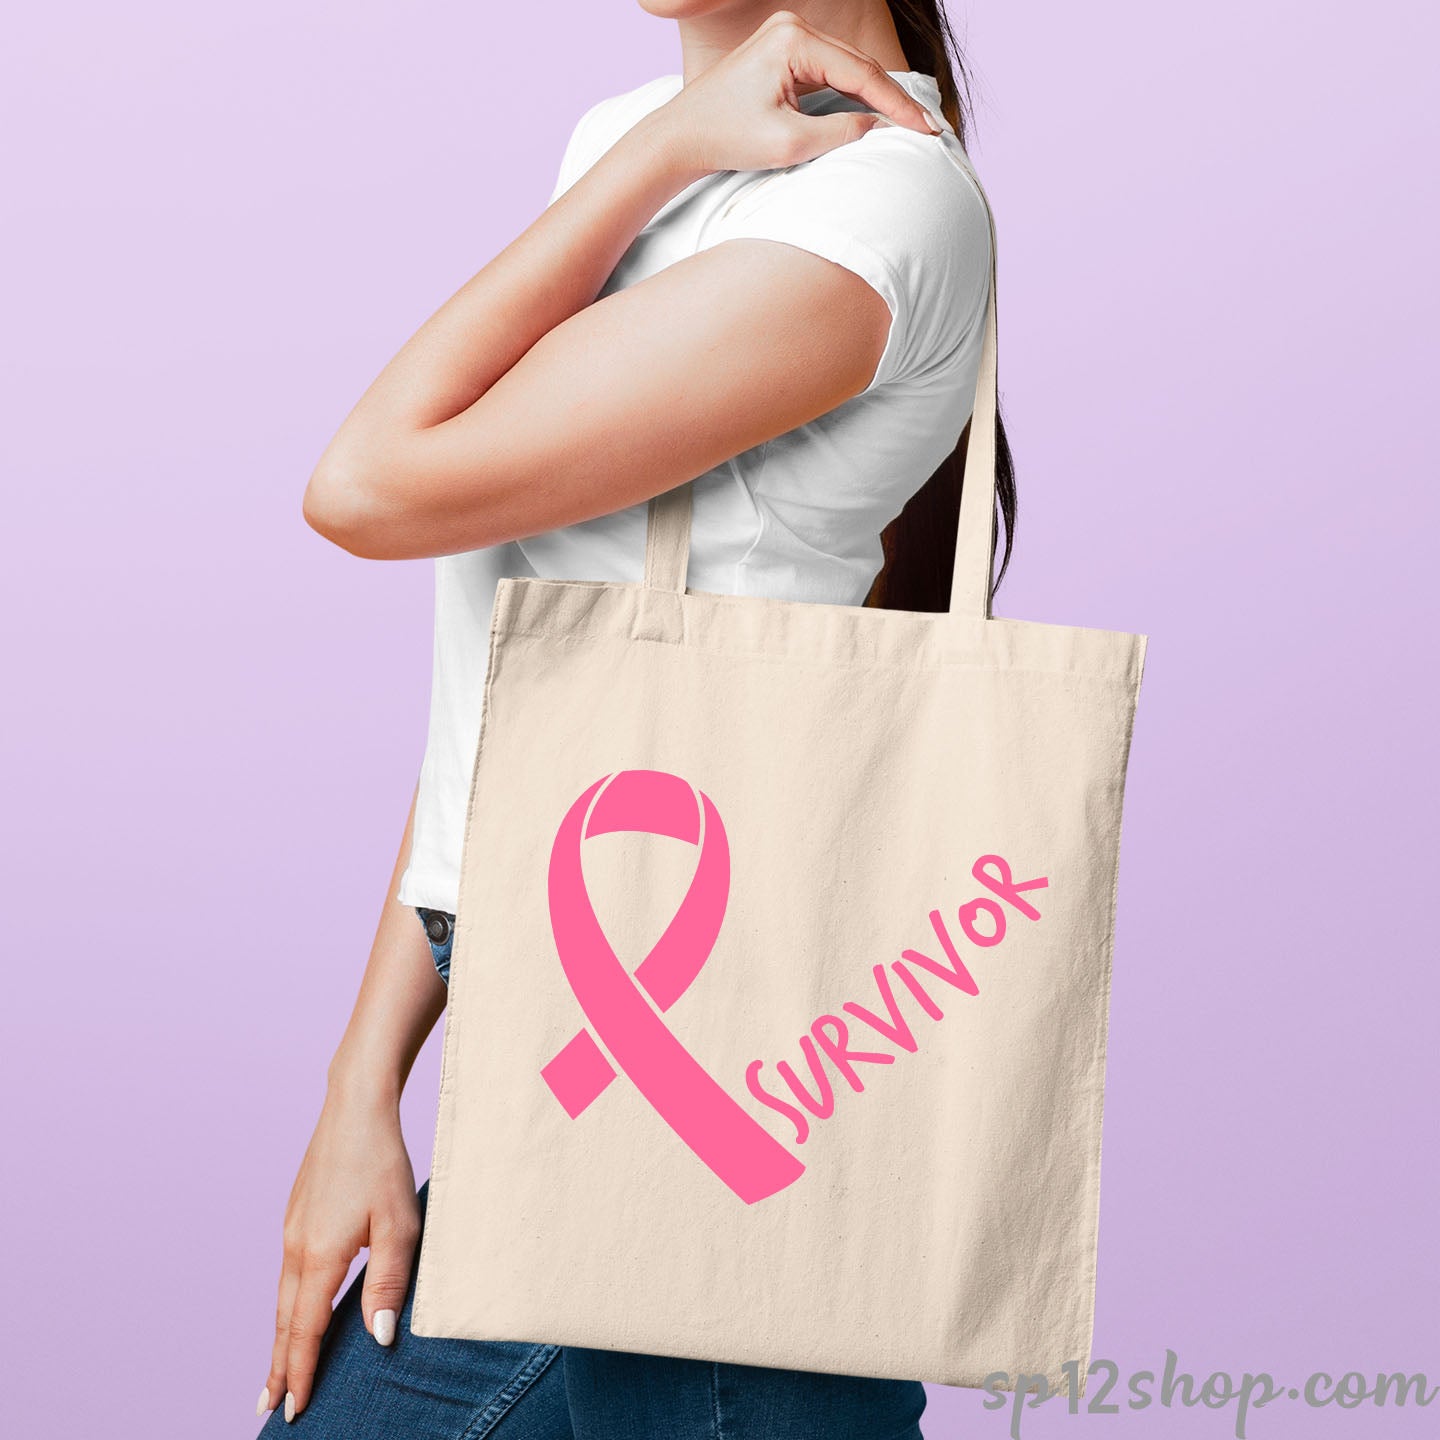 Survivor Breast Cancer Awareness Tote Bag